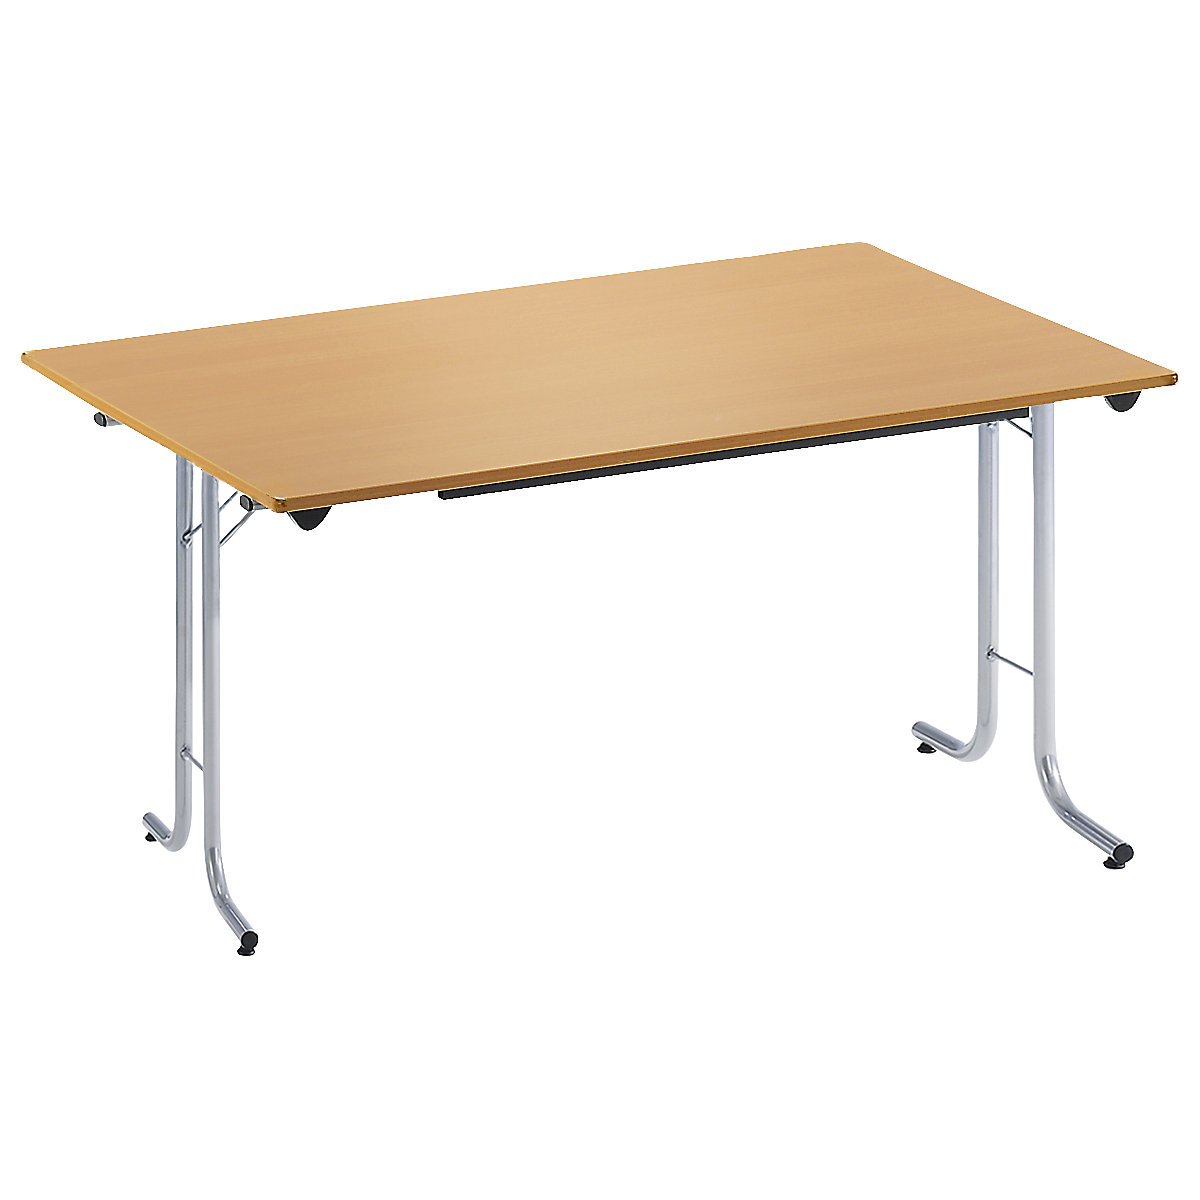 Inklapbare tafel, met afgeronde randen, tafelpoten van staalbuis, bladvorm rechthoekig, 1200 x 700 mm, frame aluminiumkleurig, blad beukenhoutdecor-17